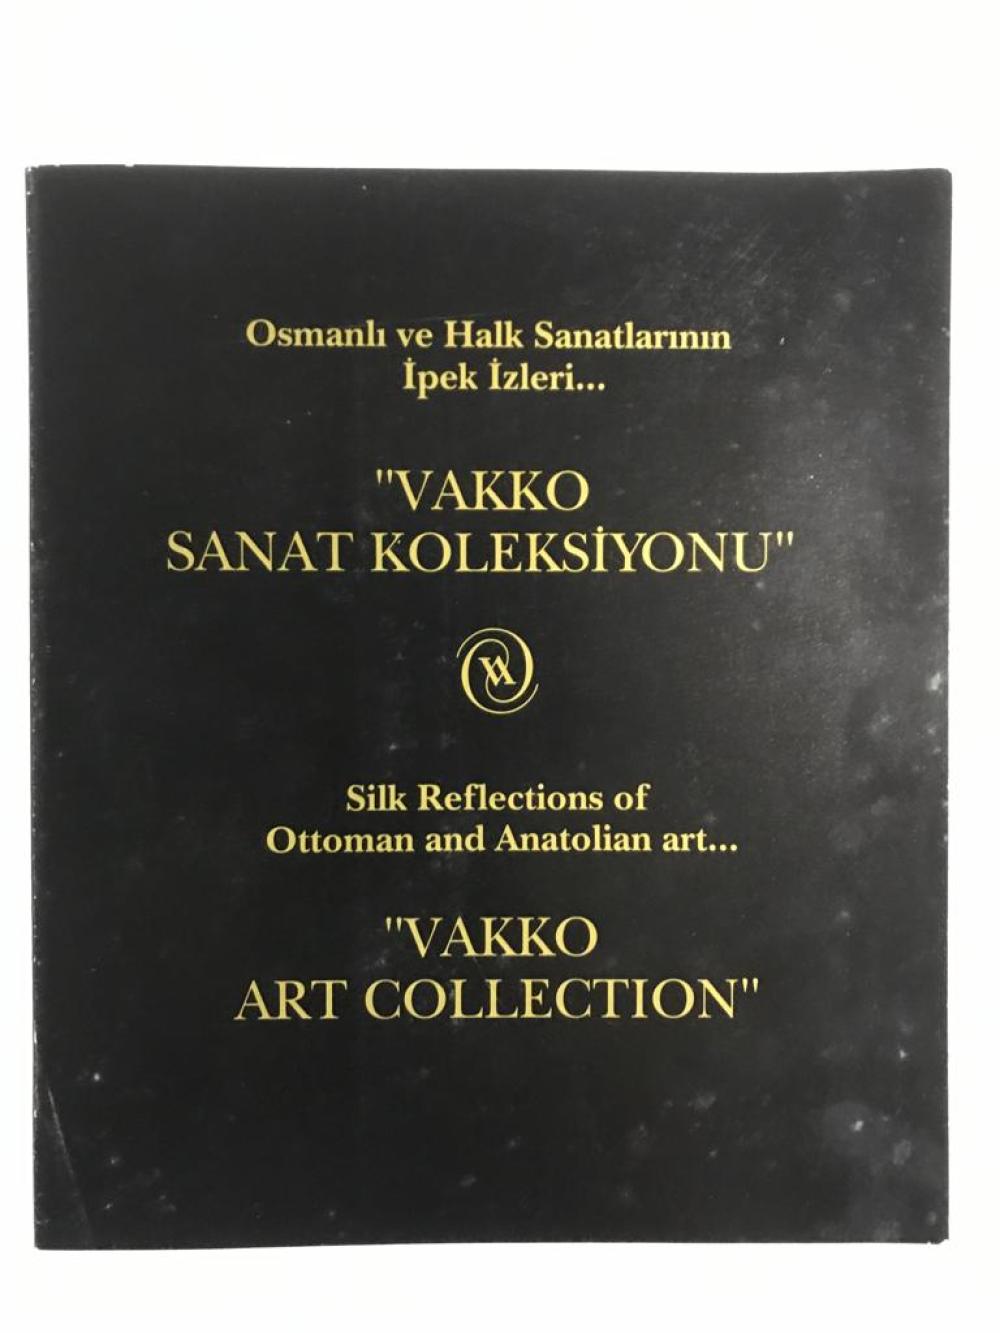 Osmanlı ve Halk Sanatlarının İpek İzleri "Vakko Sanat Koleksiyonu" - Broşür